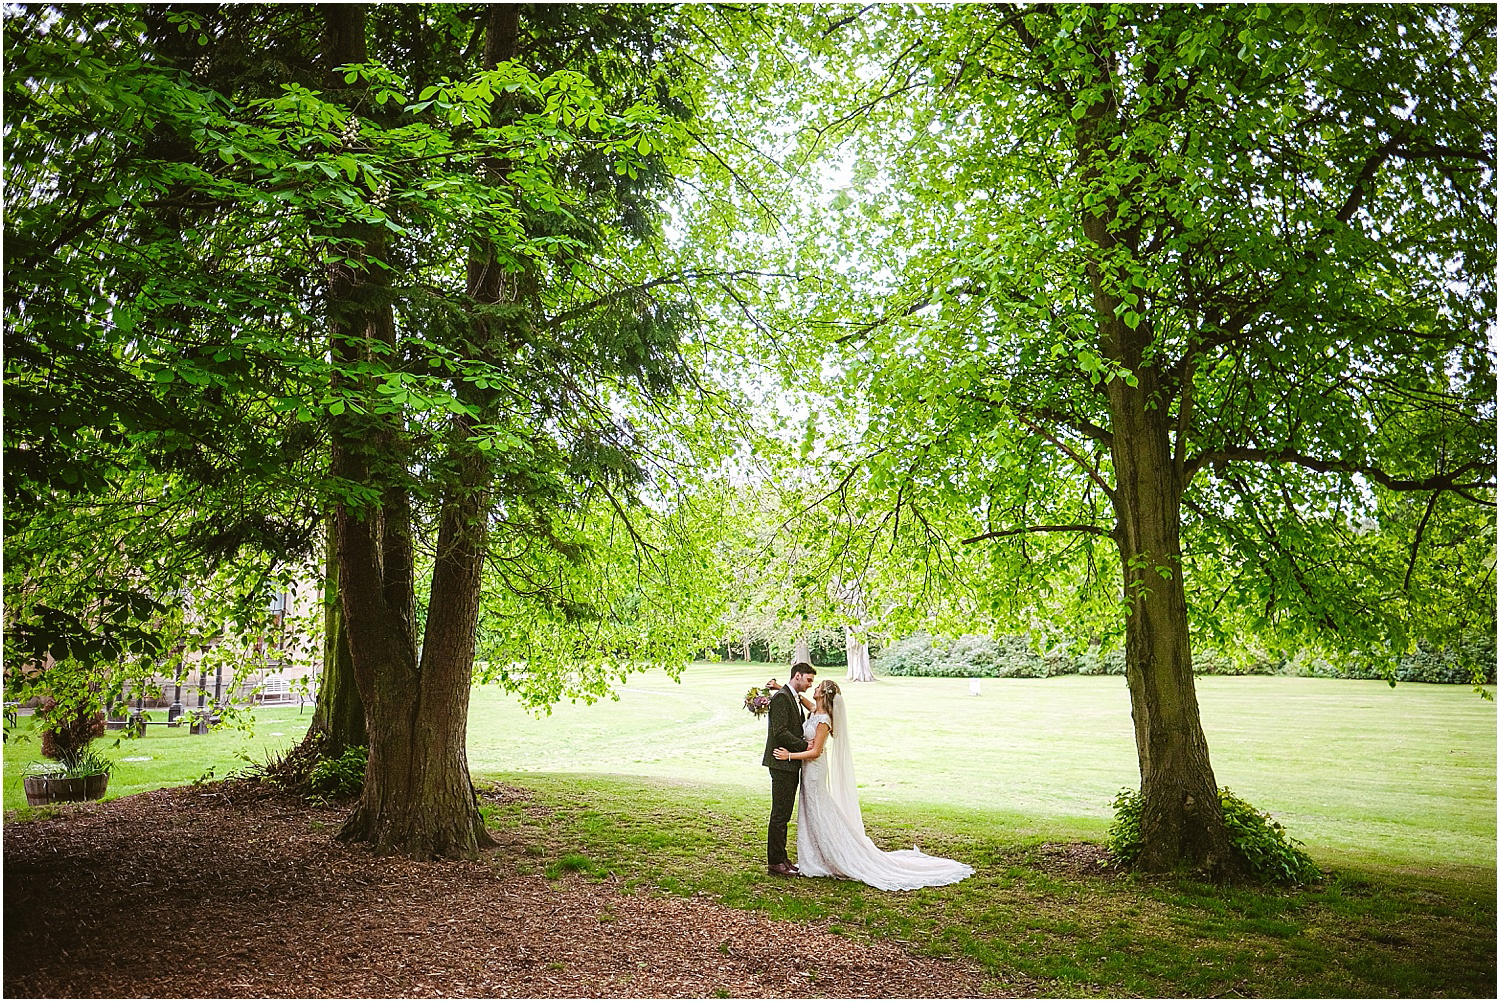 Beamish Hall wedding photography - Laura and Richard_0078.jpg